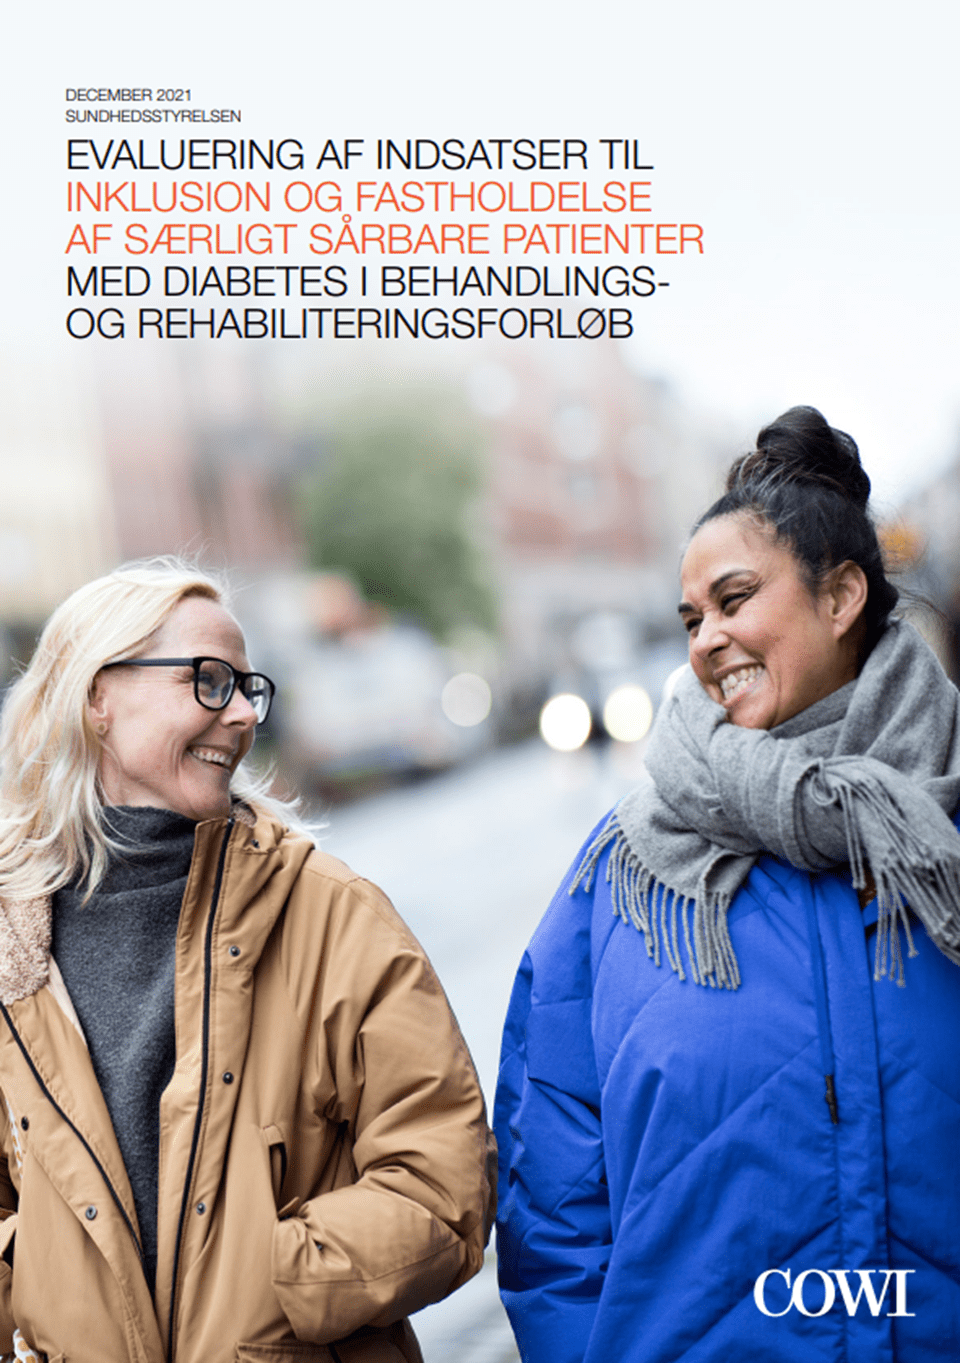 Evaluering af indsatser til inklusion og fastholdelse af særligt sårbare patienter med diabetes